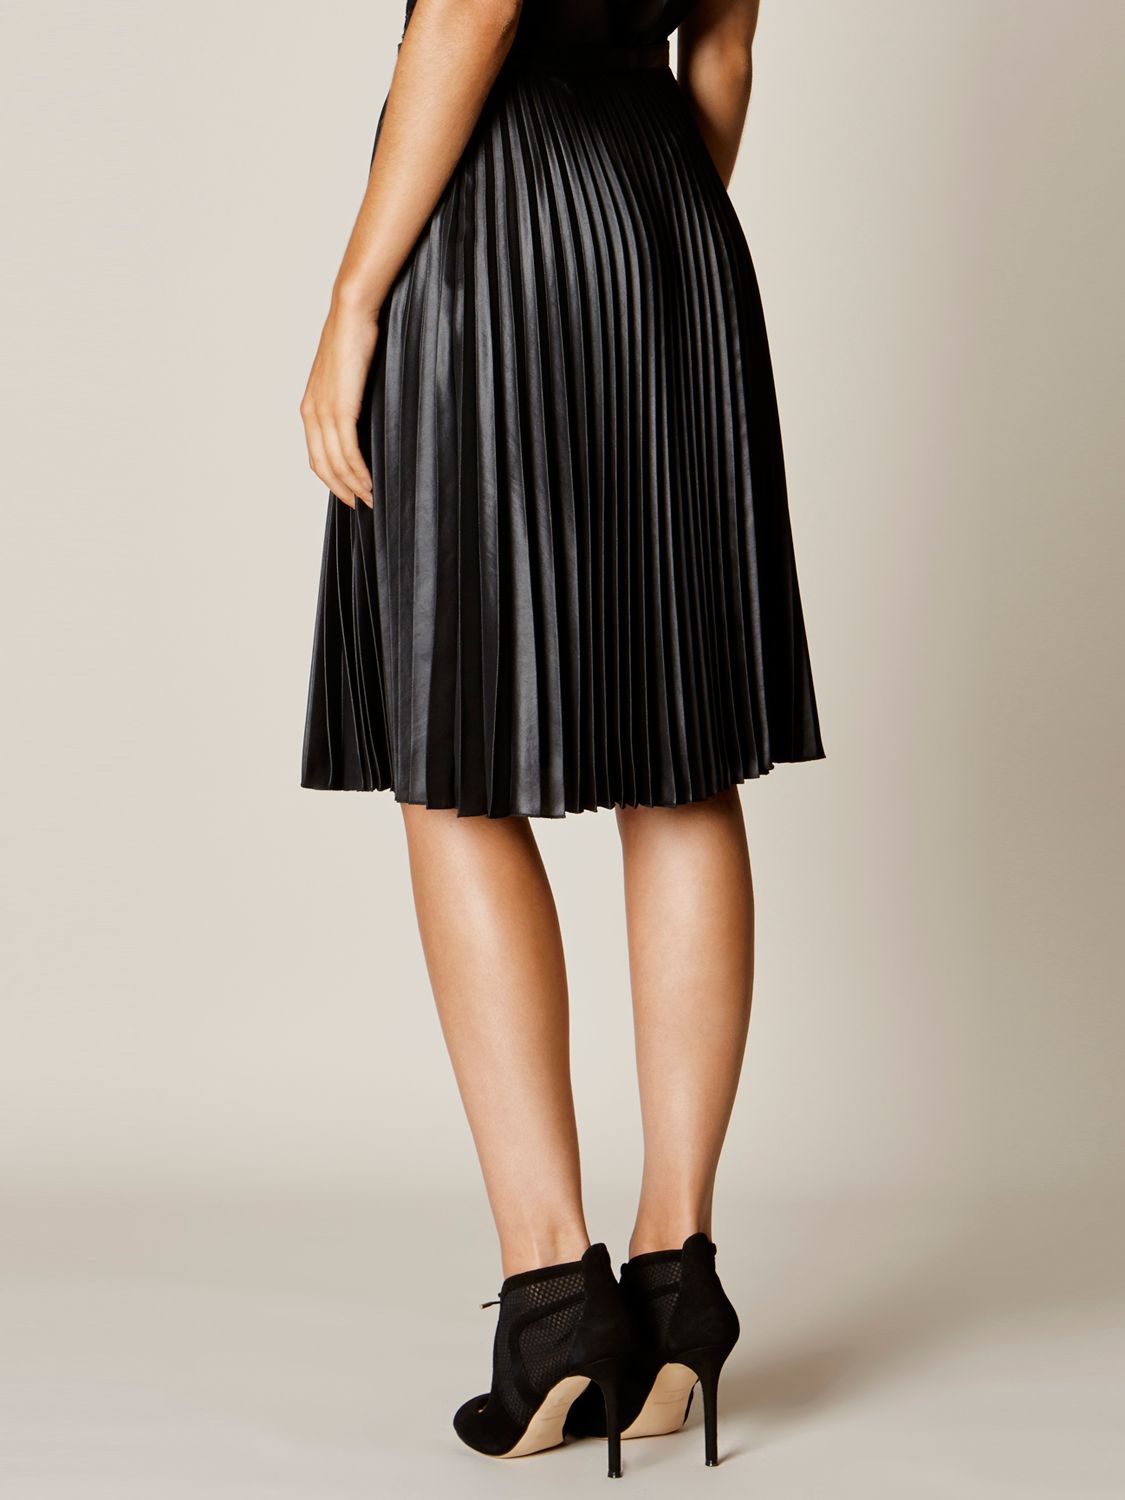 Karen Millen Wetlook Pleated Skirt